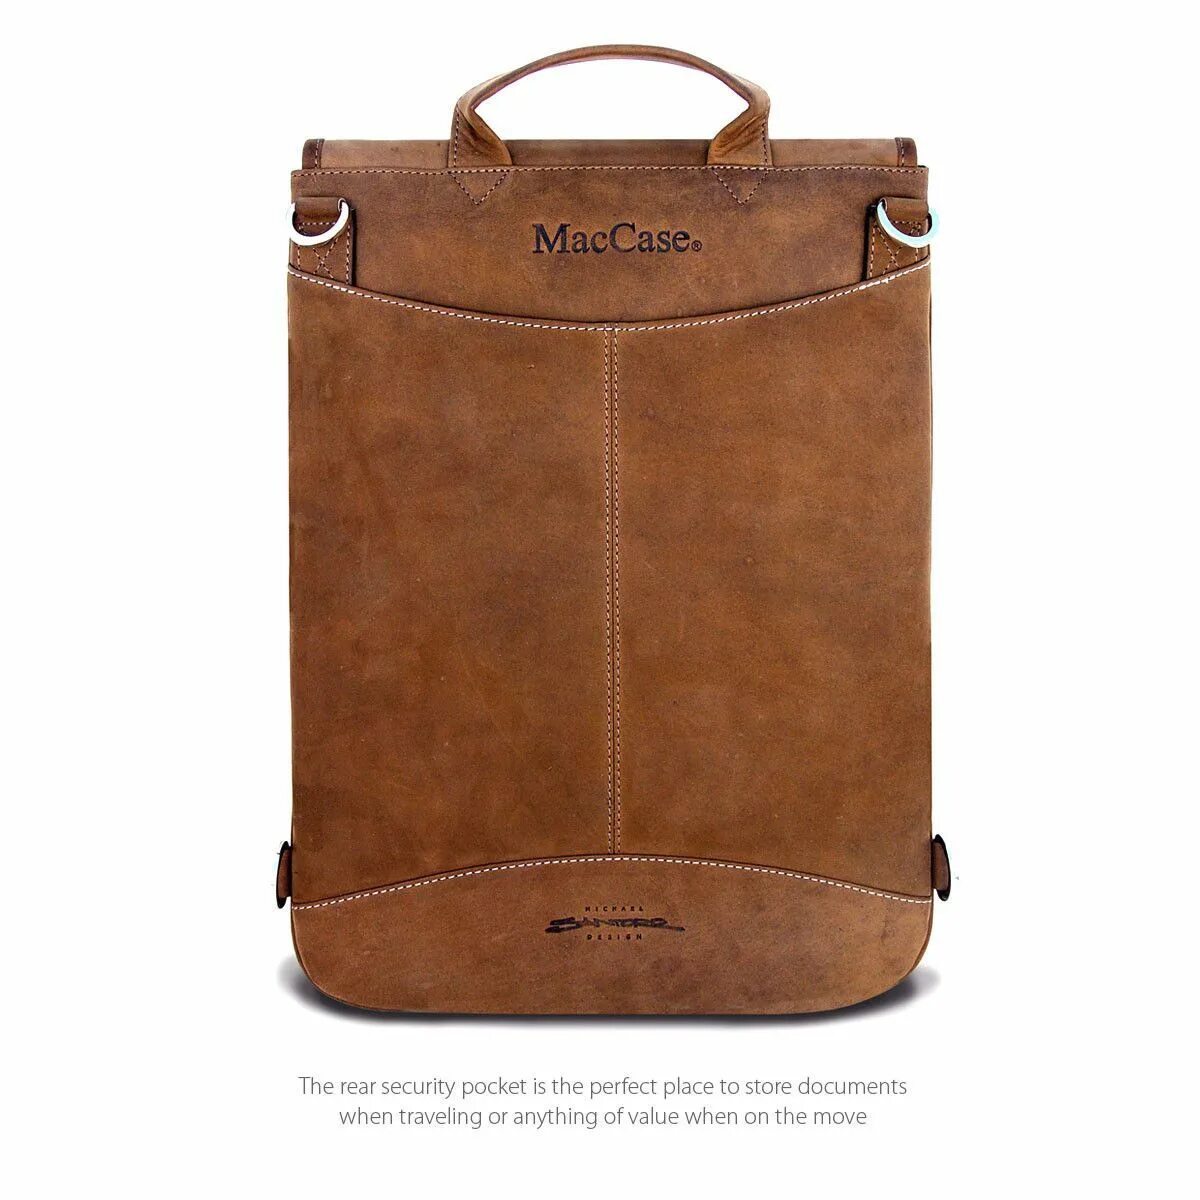 Leather Case MACBOOK Pro 16. Premium Mac book Bag Leather. Премиум сумки для MACBOOK. Сумка для макбук премиум. Premium leather